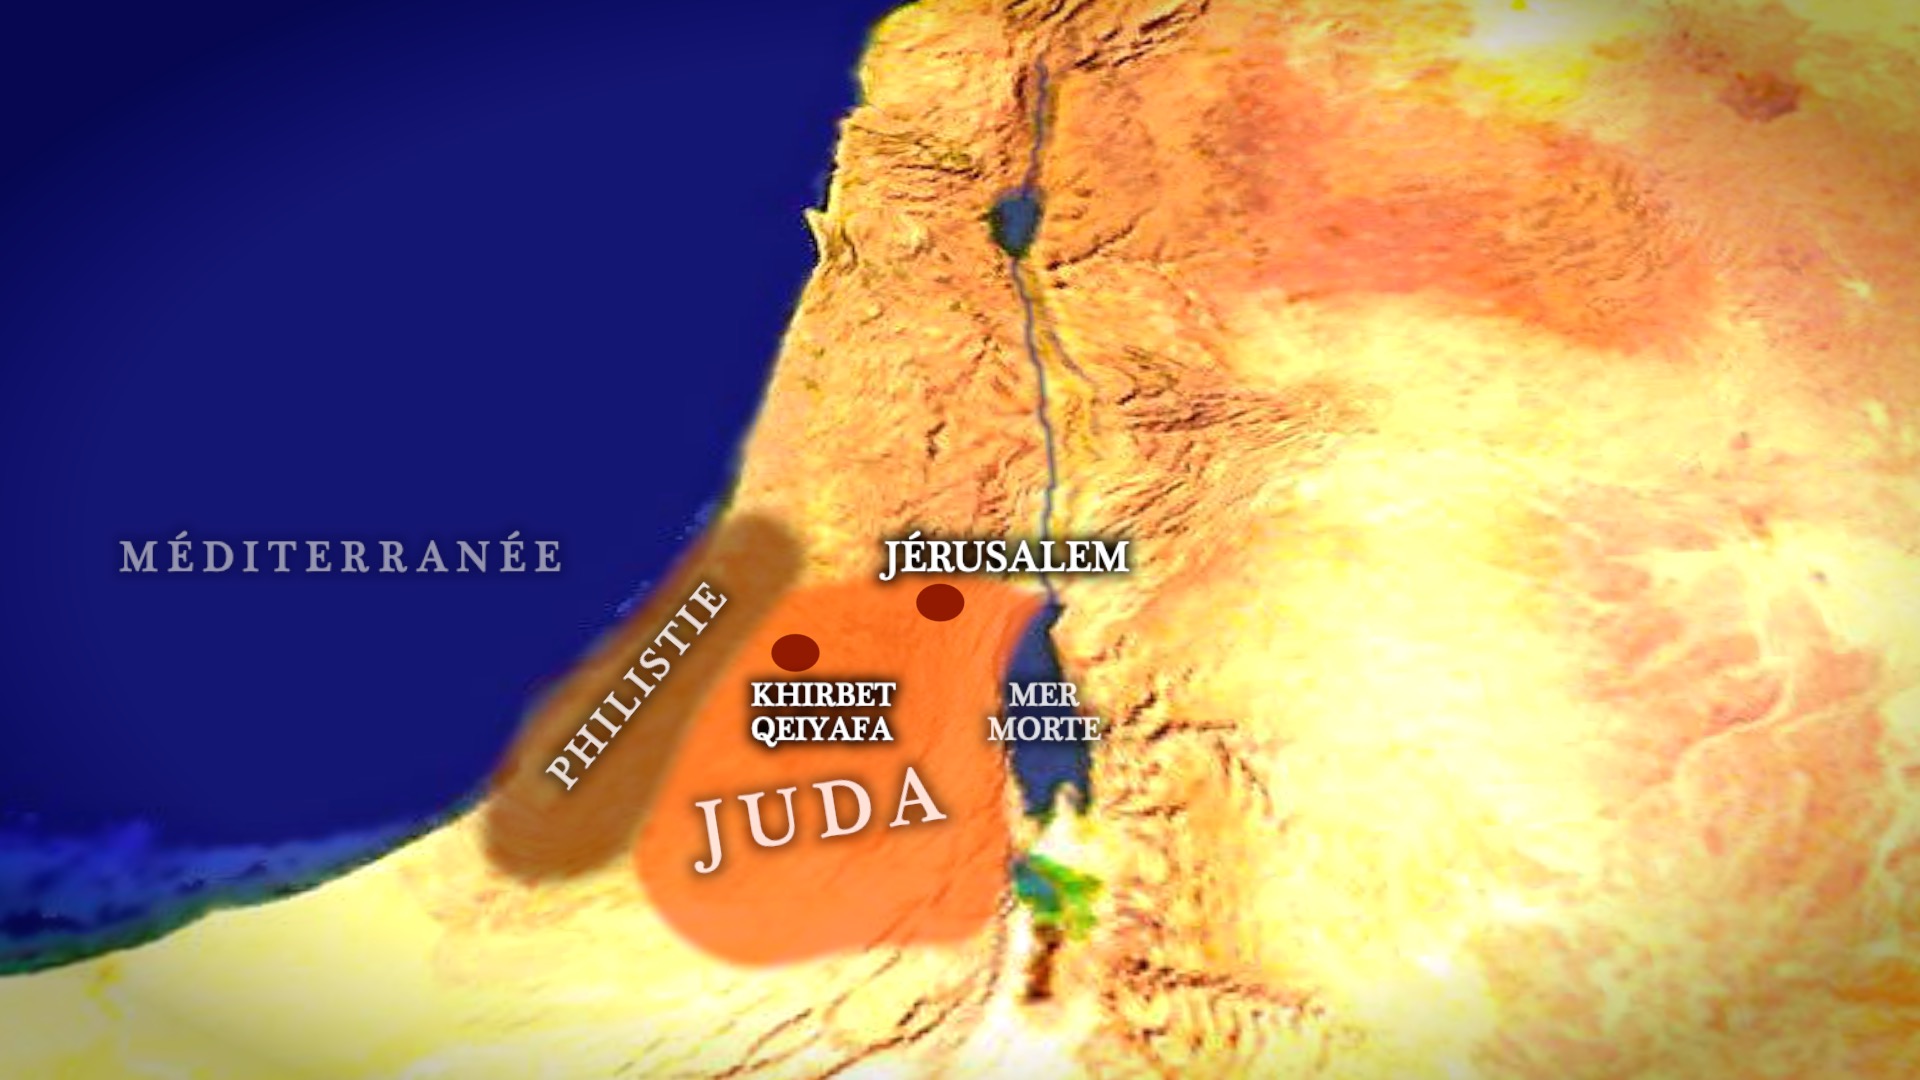 Situation de Khirbet Qeiyafa en Juda, à proximité du territoire philistin